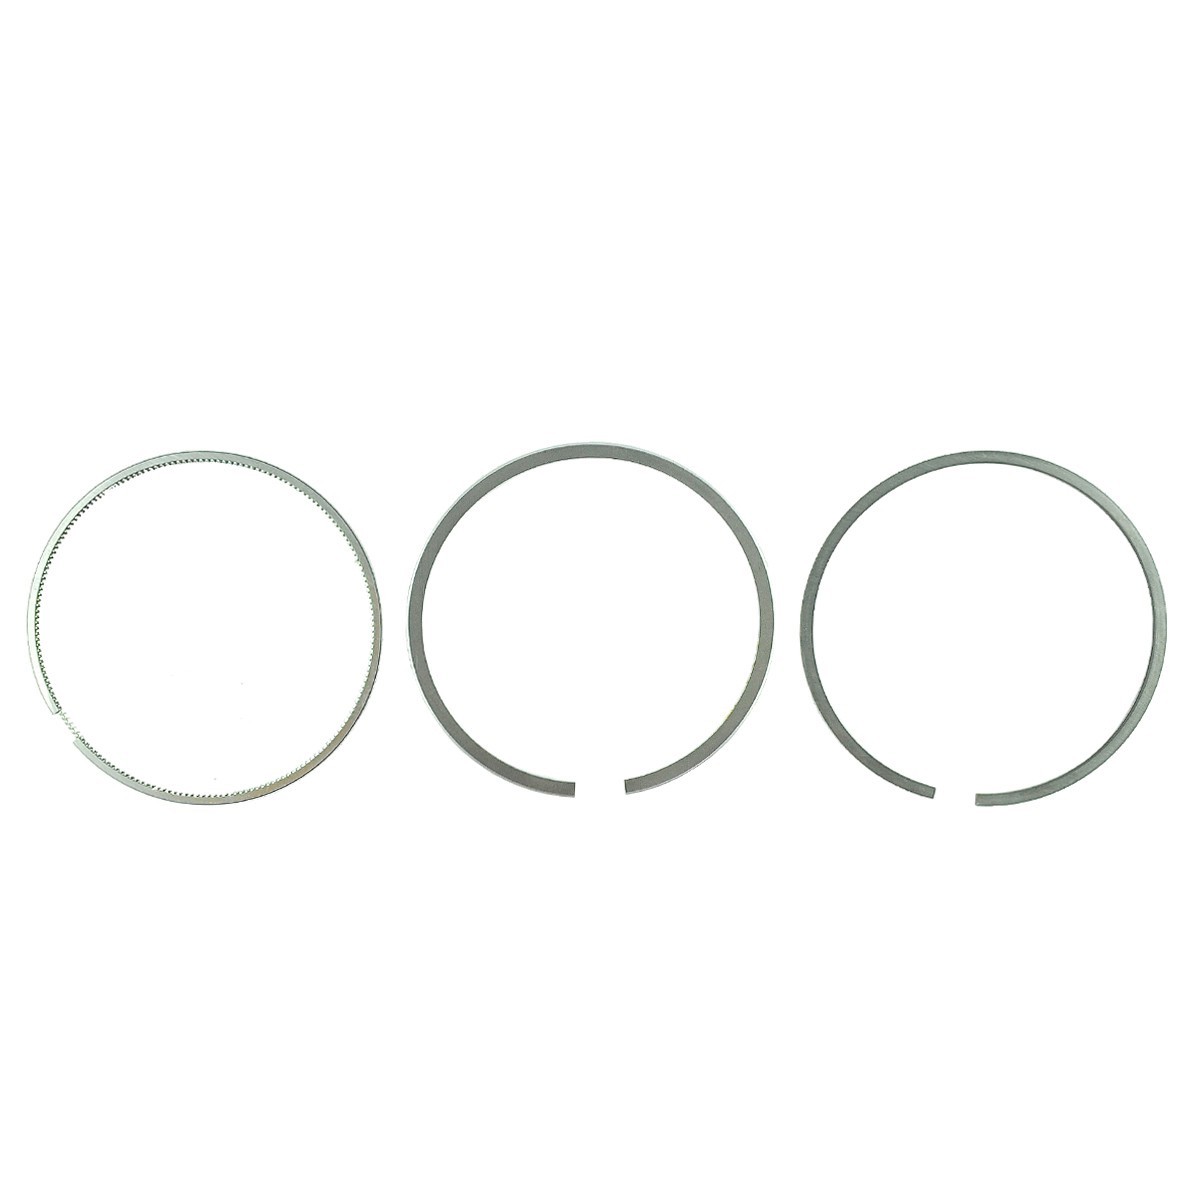 Piestne krúžky / Ø 76,50 mm / 2+1,5+4 / Kubota D1005/V1305 / 16271-21090